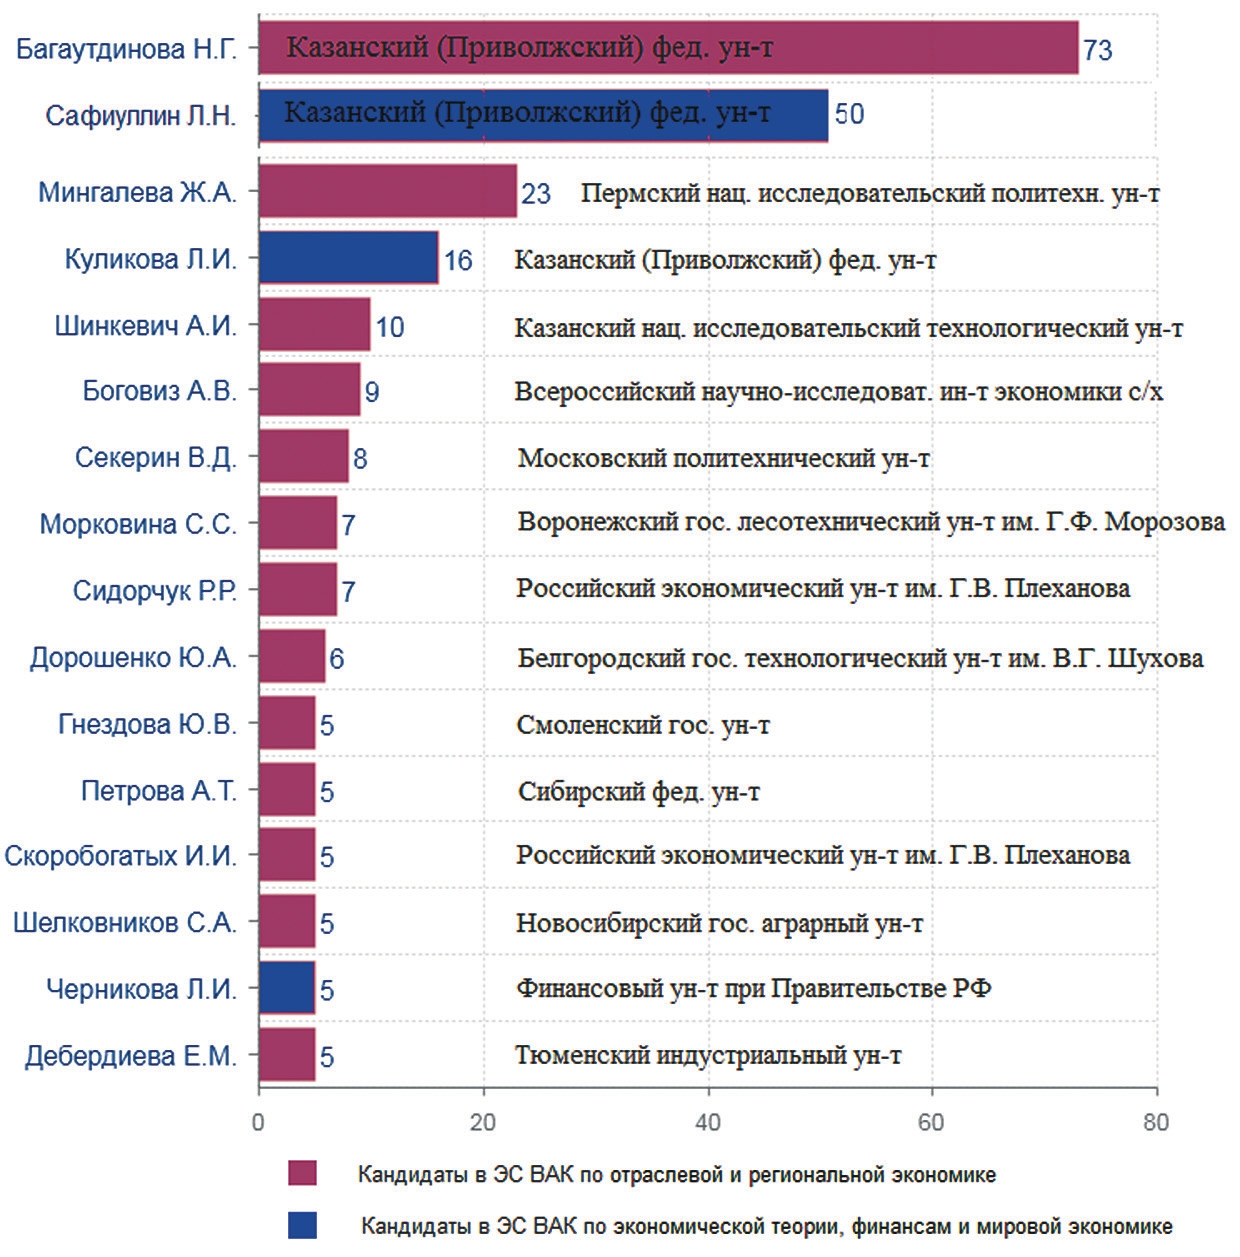 Число публикаций кандидатов в ЭС ВАК по экономике в сомнительных журналах Scopus